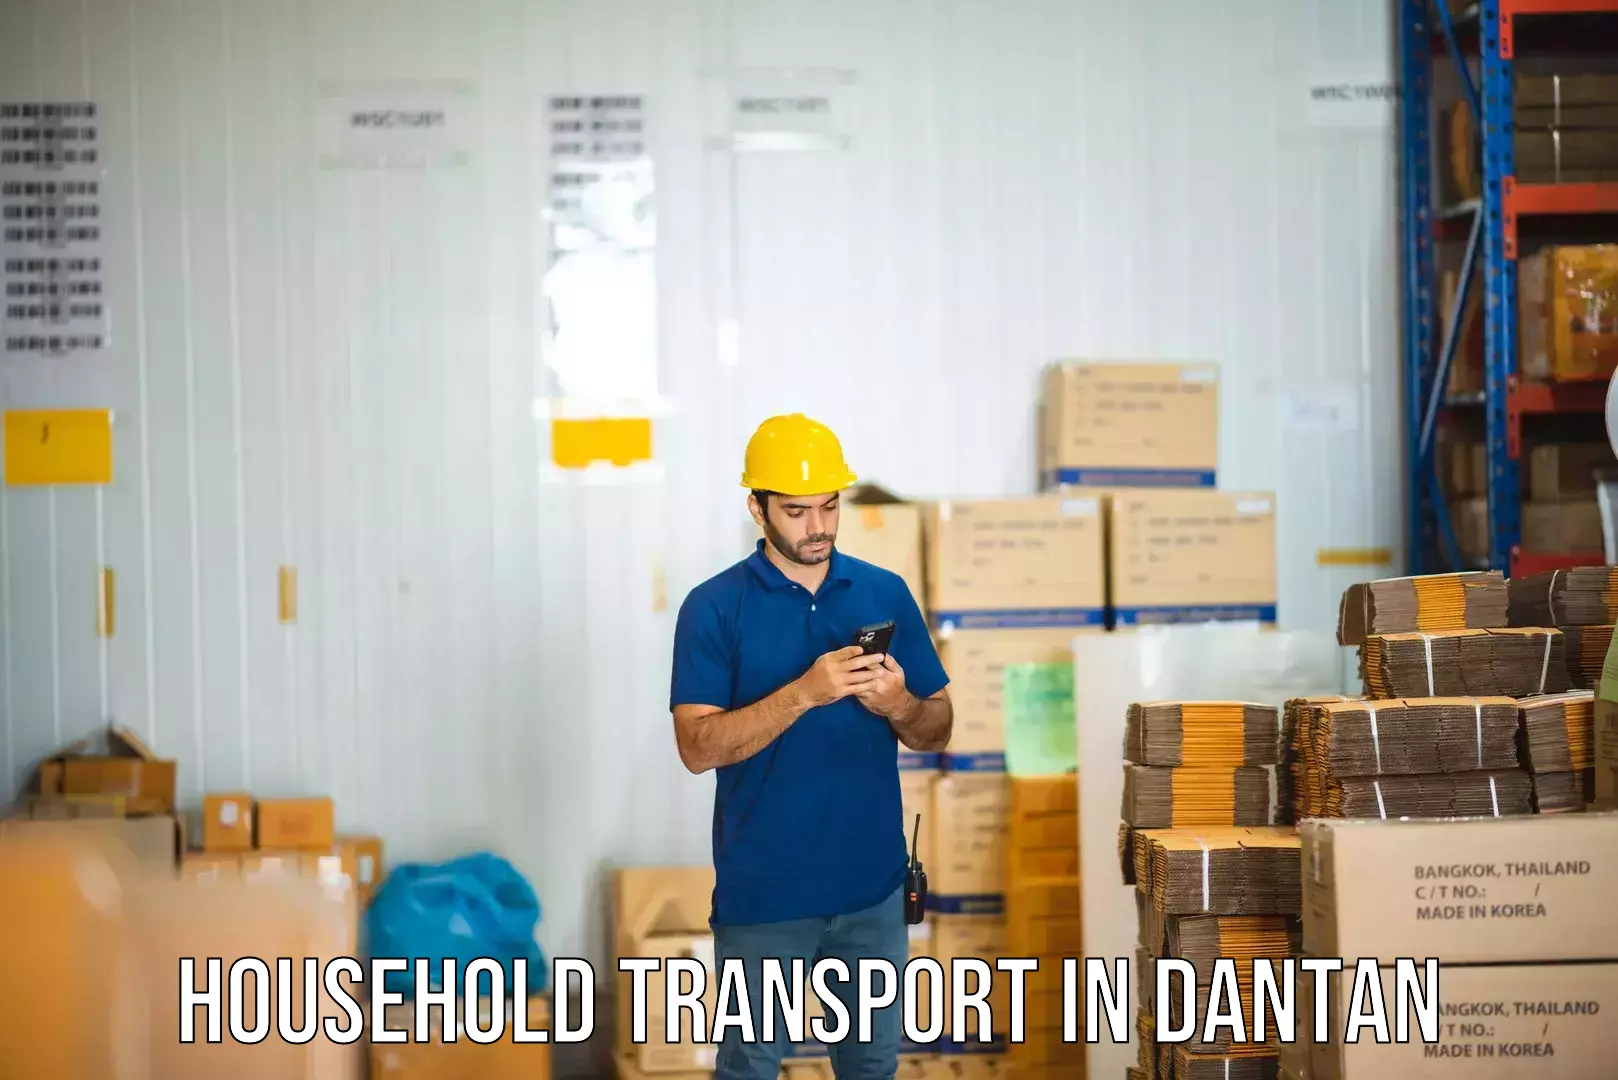 Furniture transport solutions in Dantan